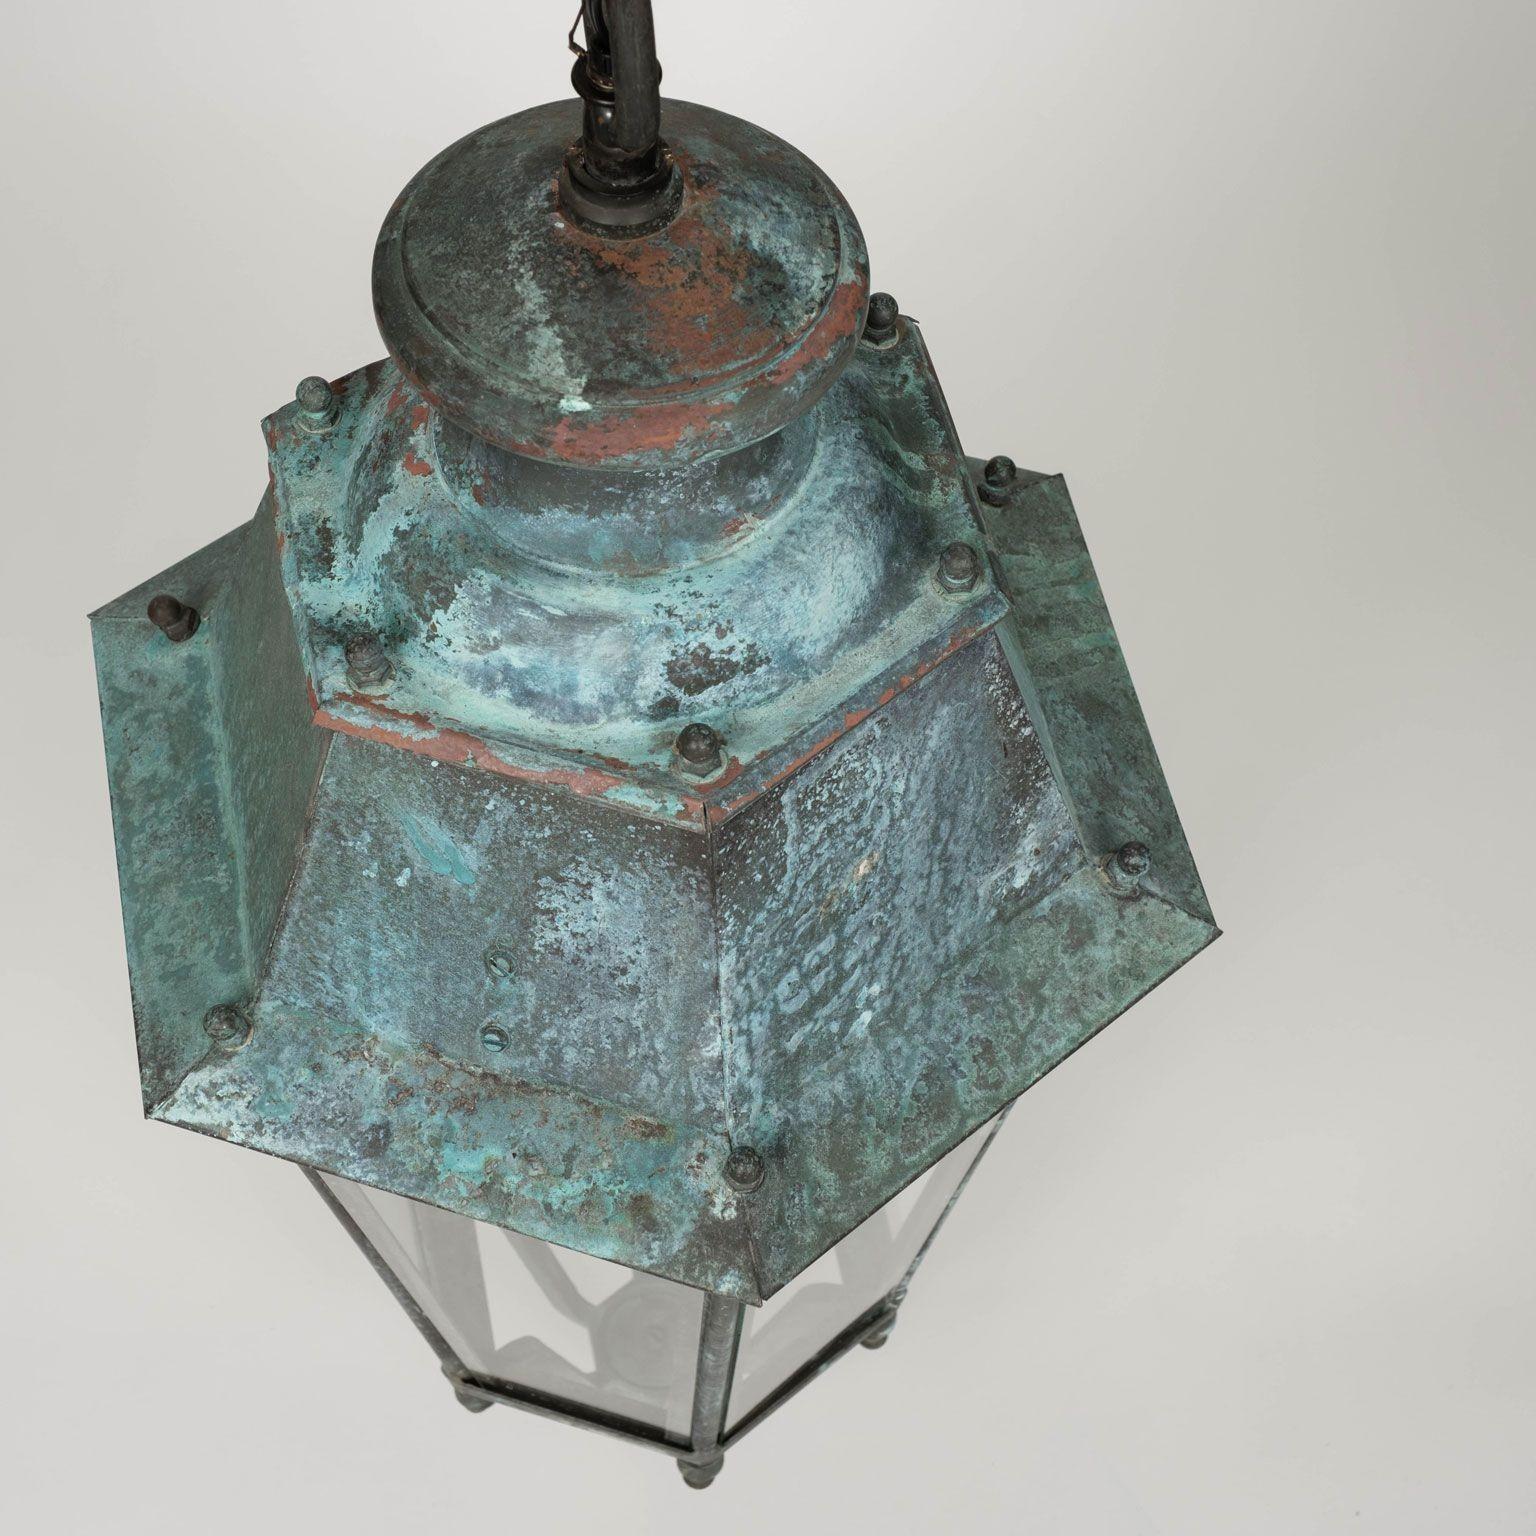 Paire de lanternes en cuivre et verre du XIXe siècle, vers 1865-1884. Patine vert-bleu. Elles servaient à l'origine de lanternes de rue éclairées au gaz. Elles sont désormais équipées d'une grappe de trois lampes candélabres chacune. Comprend quatre